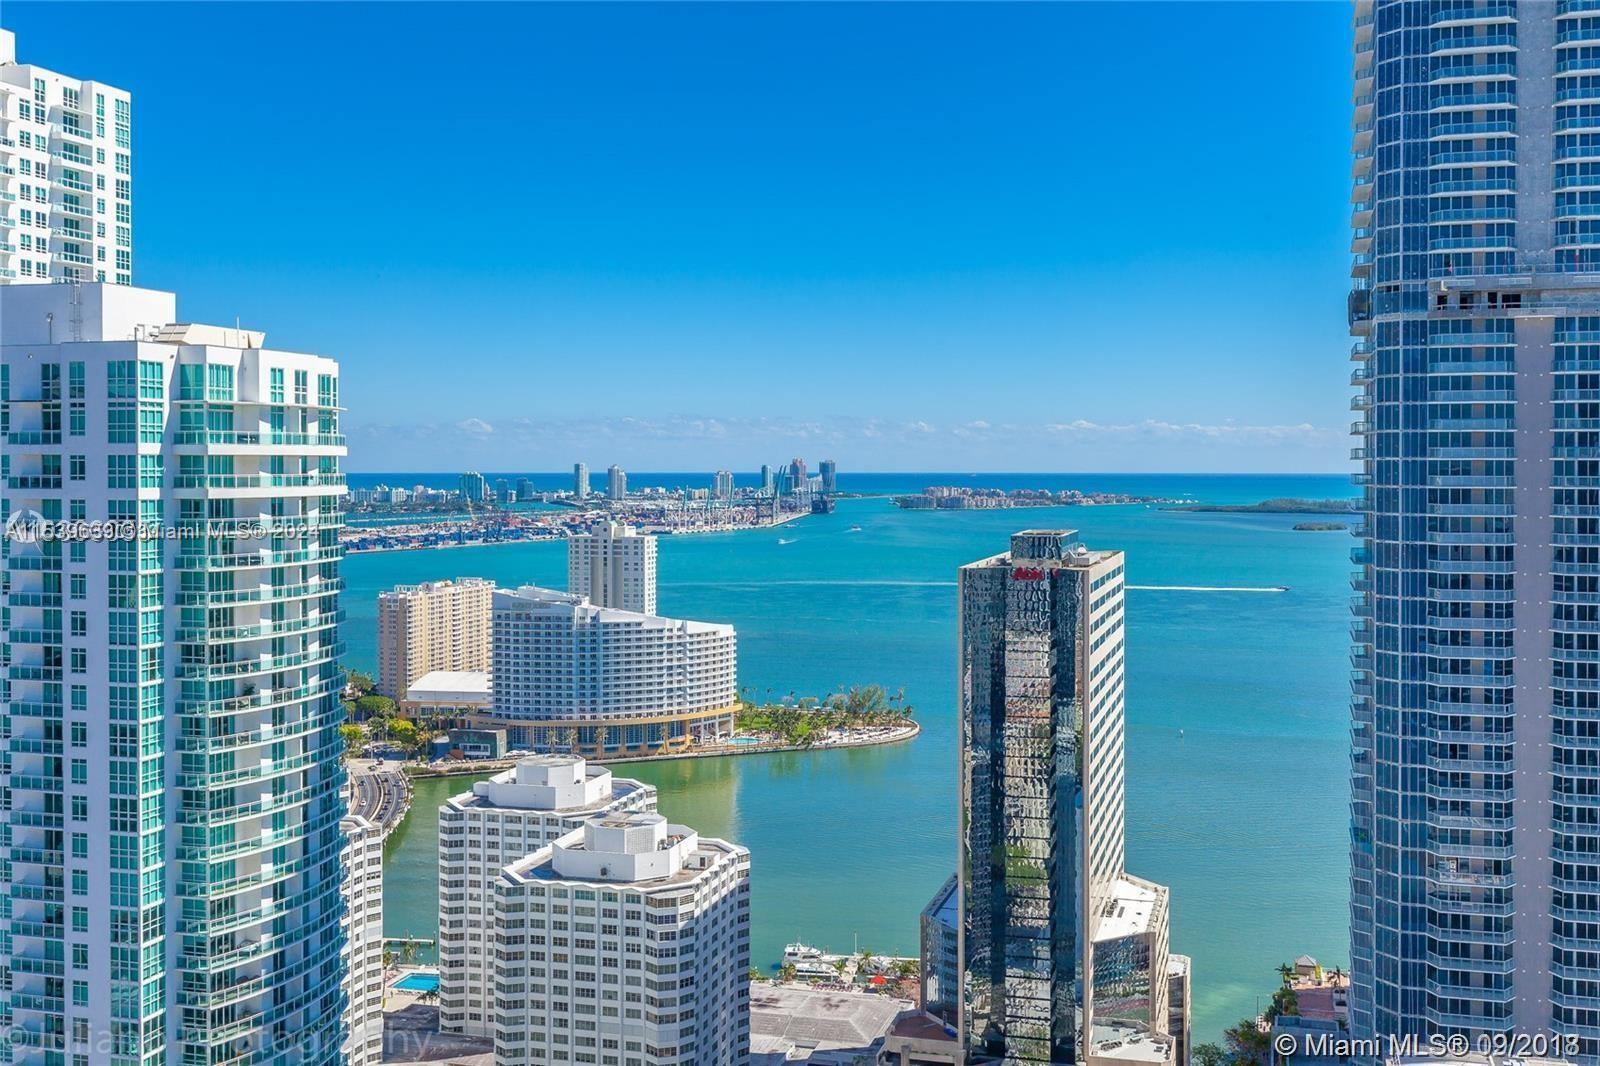 Condo for Sale in Miami, FL